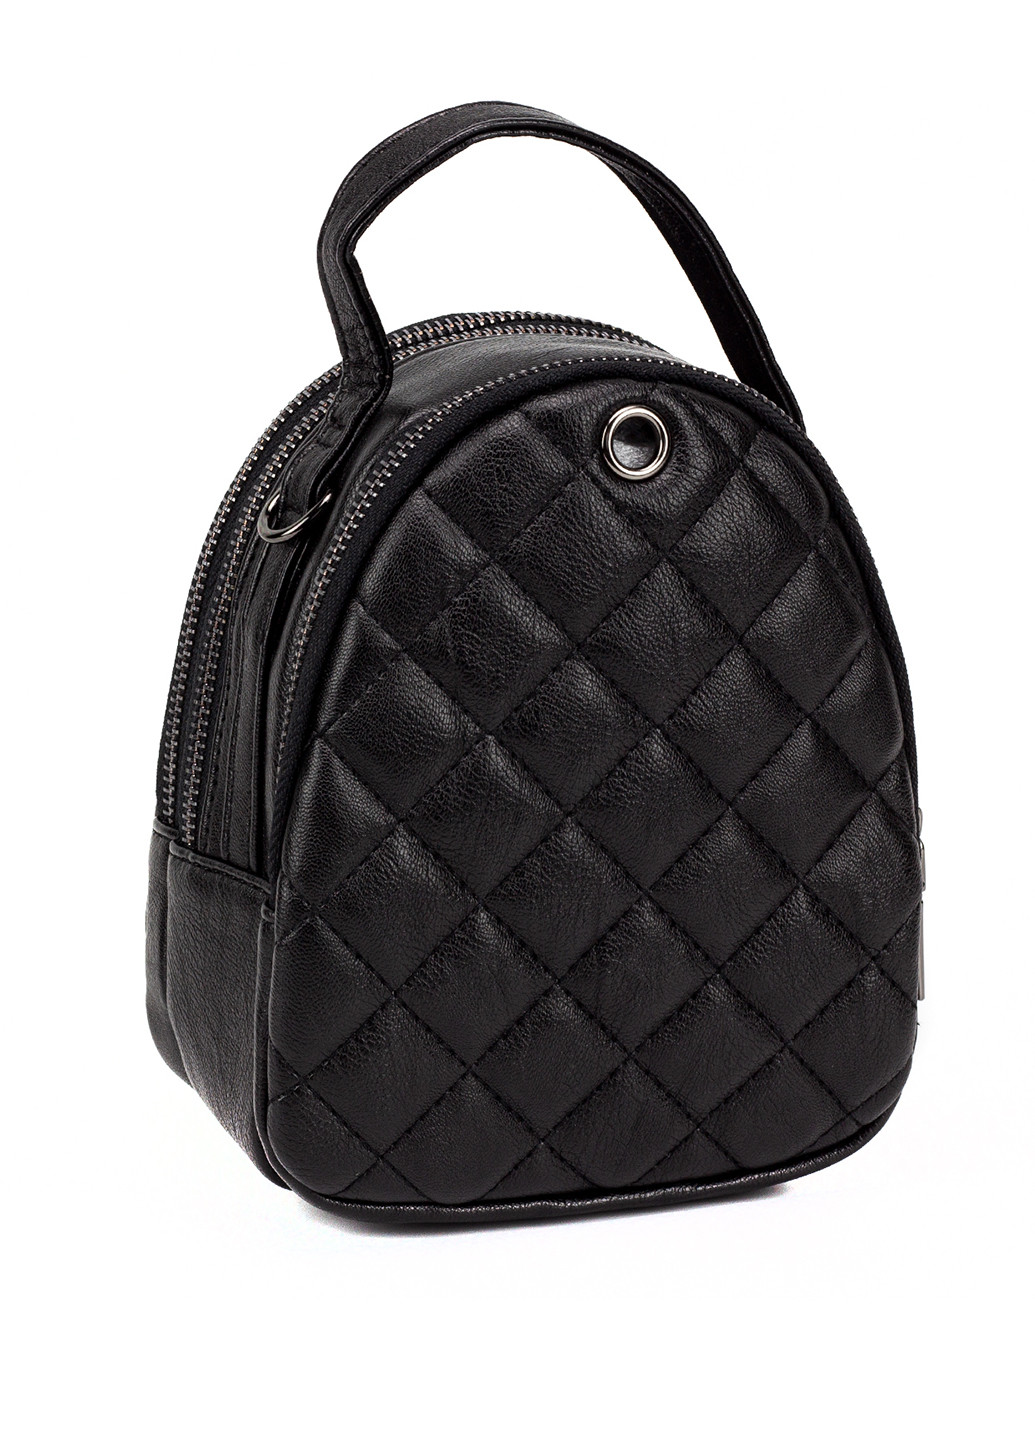 Женская небольшая сумка Corze AB14047 кросс боди чёрная кэжуал